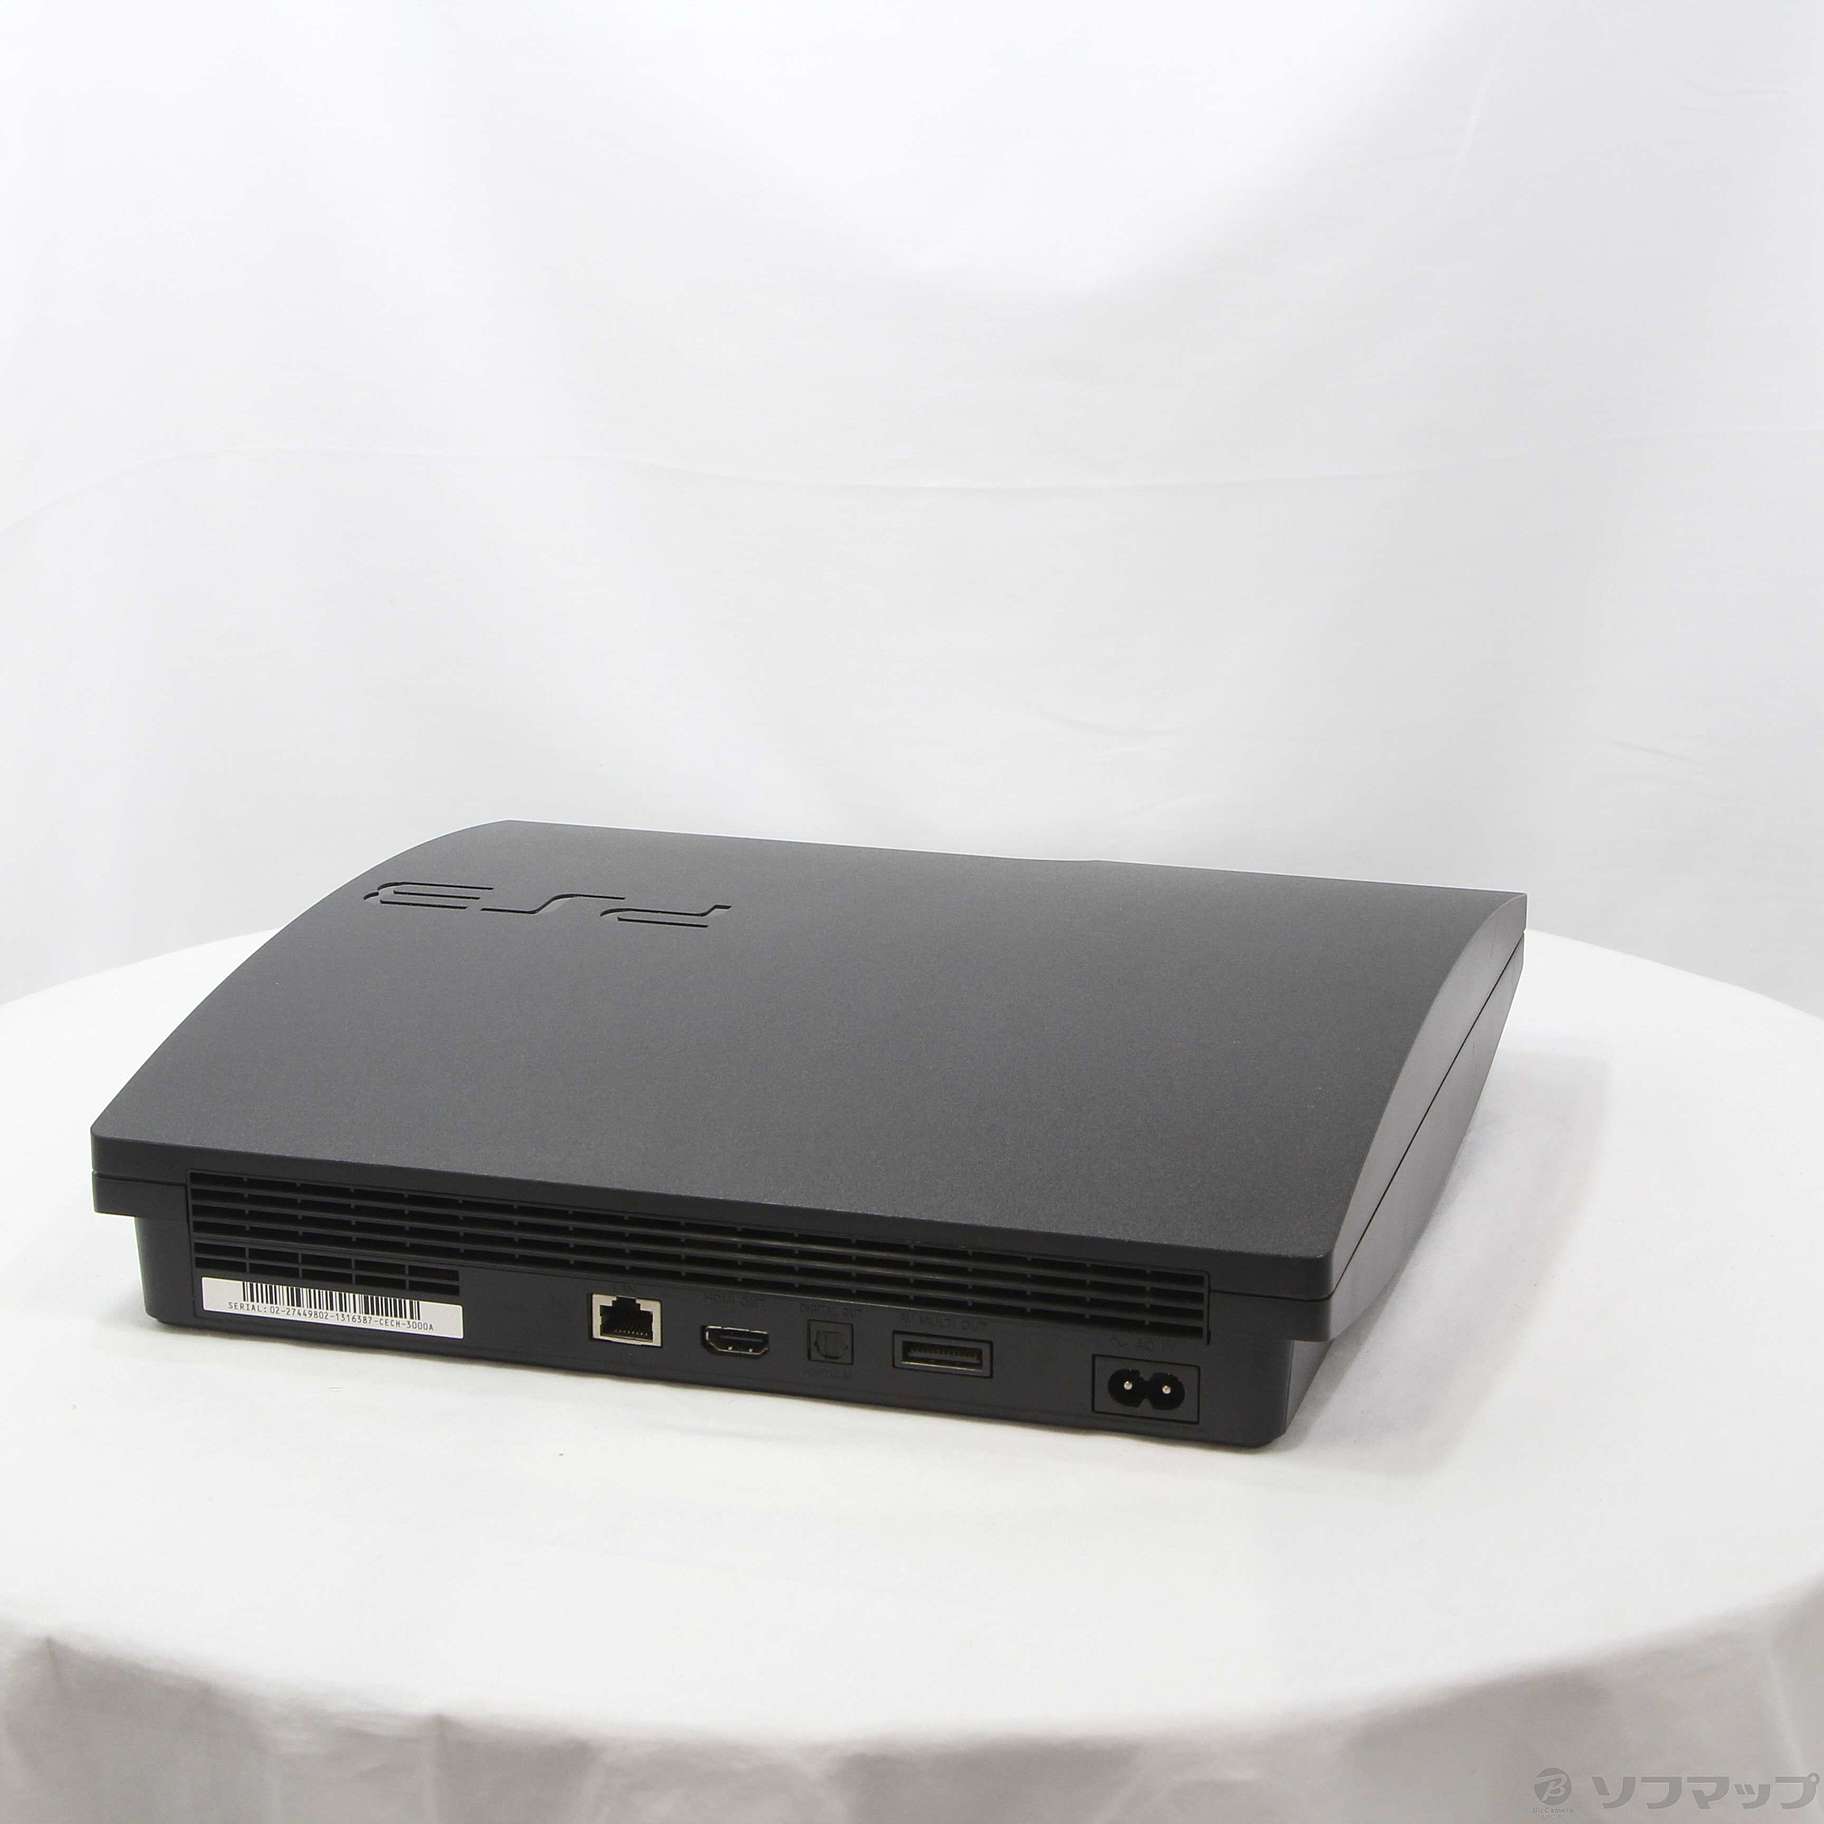 〔中古品〕 PlayStation 3 160GB チャコールブラック CECH-3000A